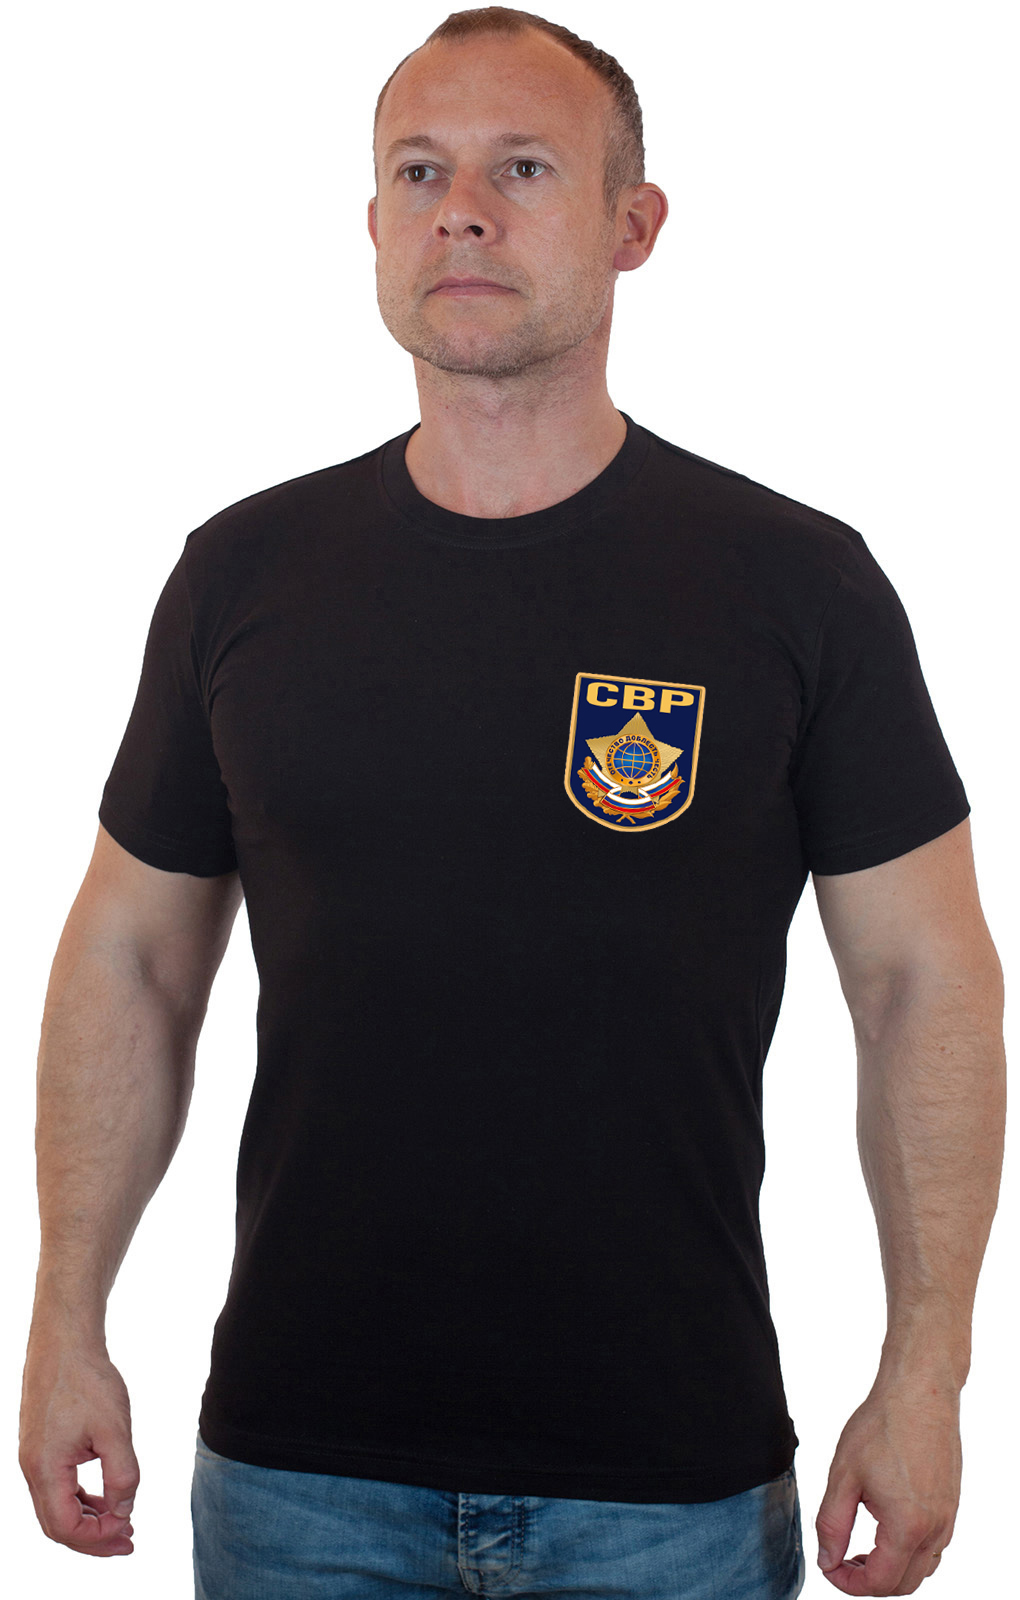 Чёрная футболка "Служба внешней разведки" 